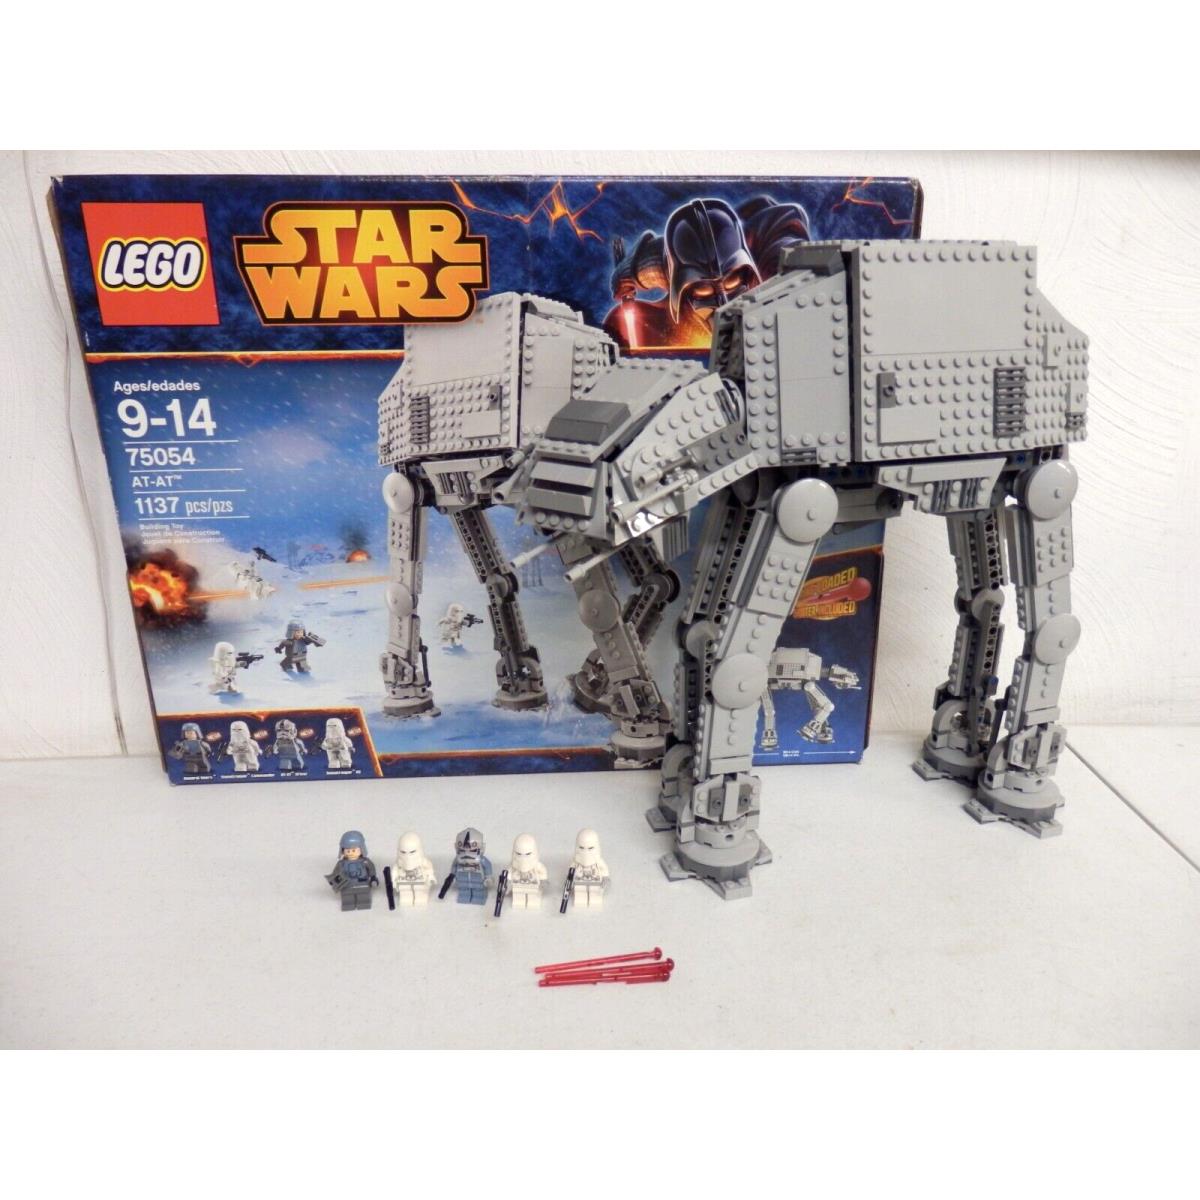 Lego - Star Wars - Set 75054 - At-at - W/box - OS